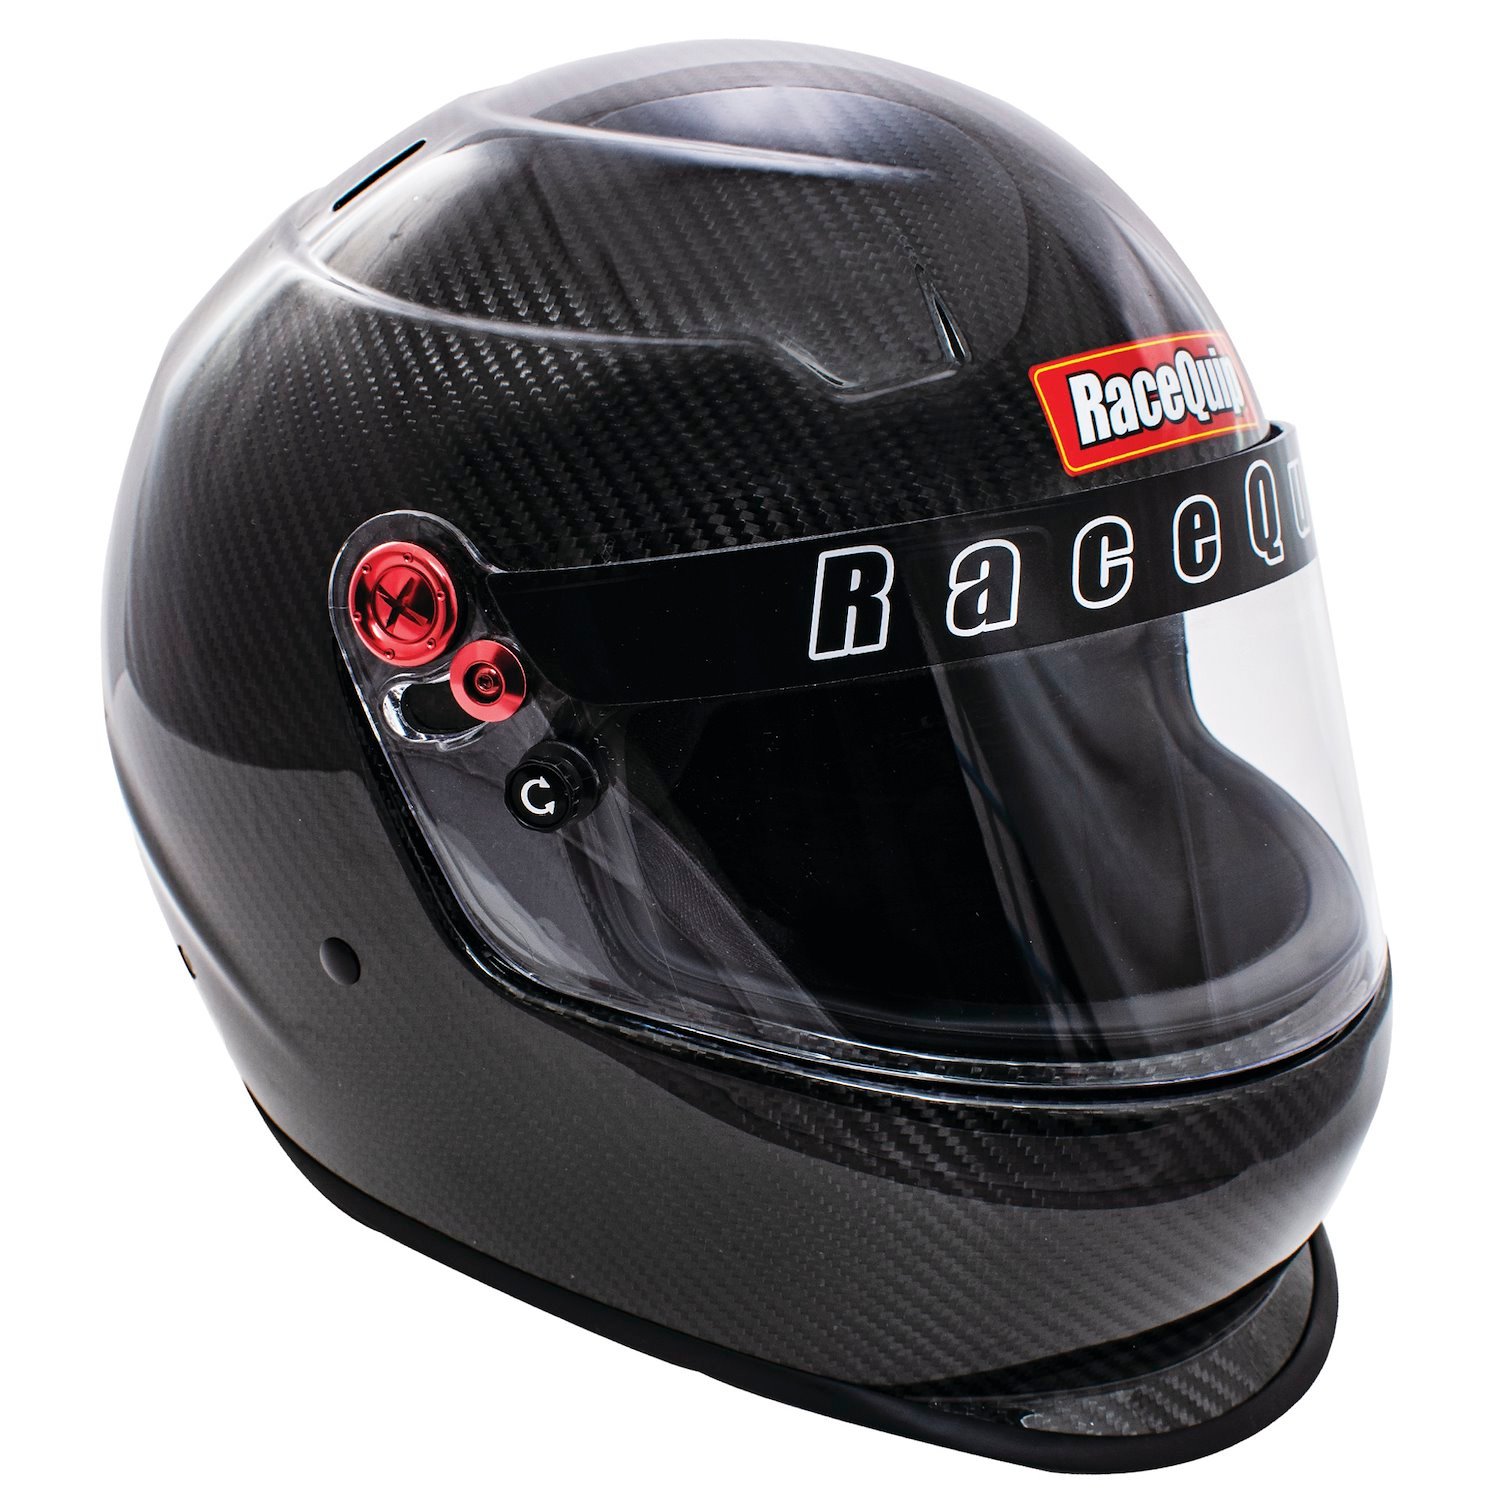 RaceQuip Pro20 SA2020 Racing Helmets